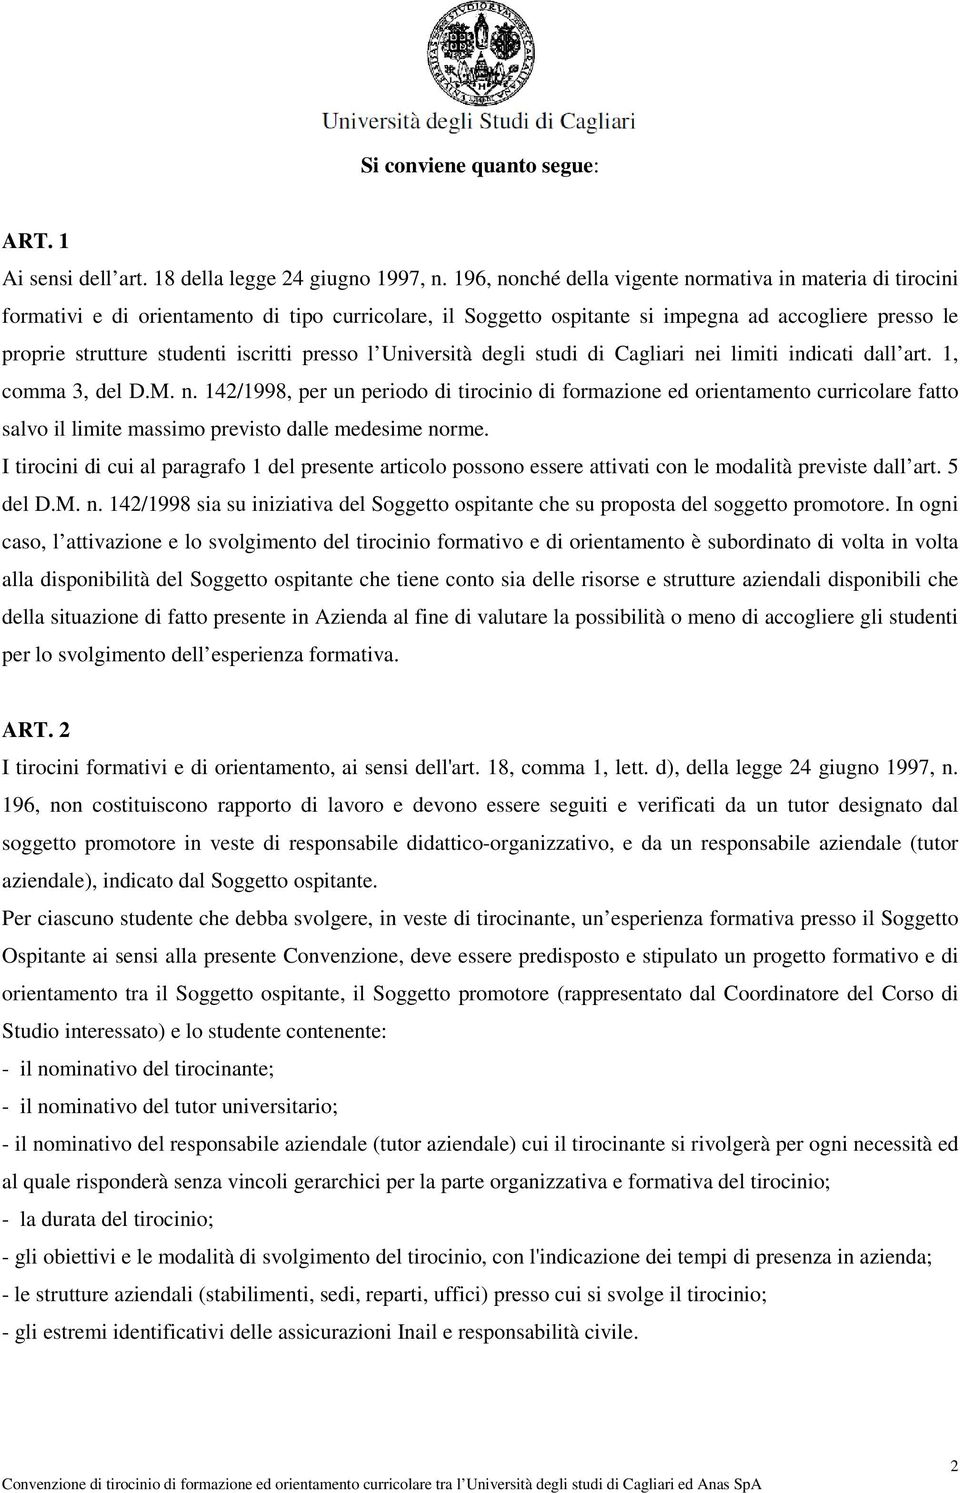 iscritti presso l Università degli studi di Cagliari nei limiti indicati dall art. 1, comma 3, del D.M. n. 142/1998, per un periodo di tirocinio di formazione ed orientamento curricolare fatto salvo il limite massimo previsto dalle medesime norme.